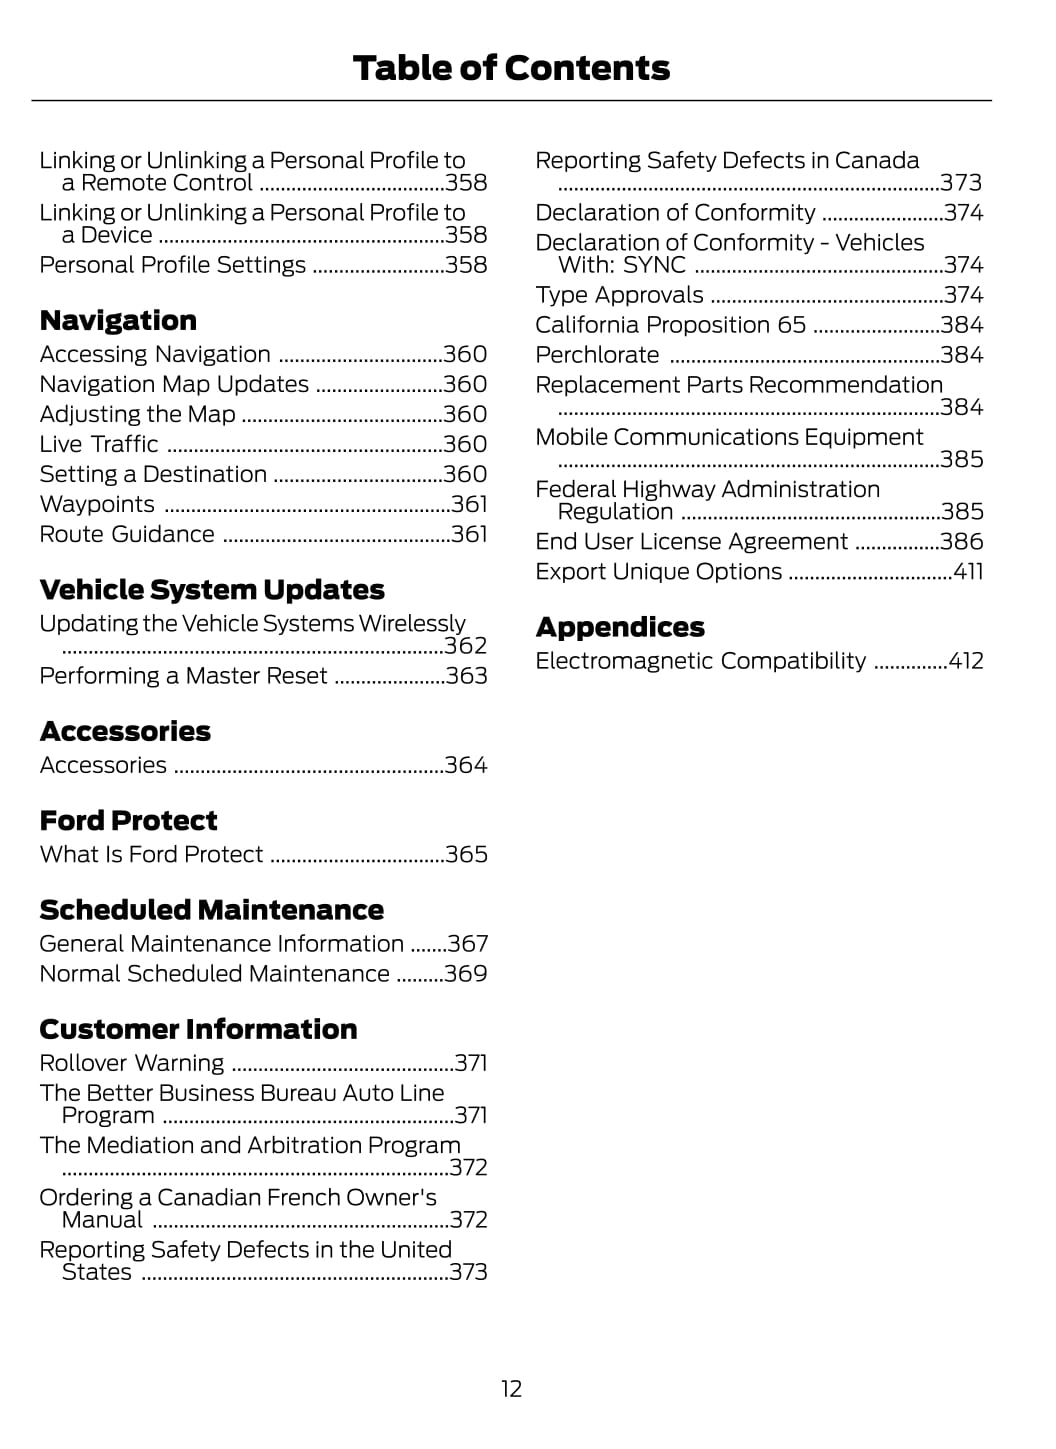 2020-2021 Ford Mustang Mach-E Gebruikershandleiding | Engels